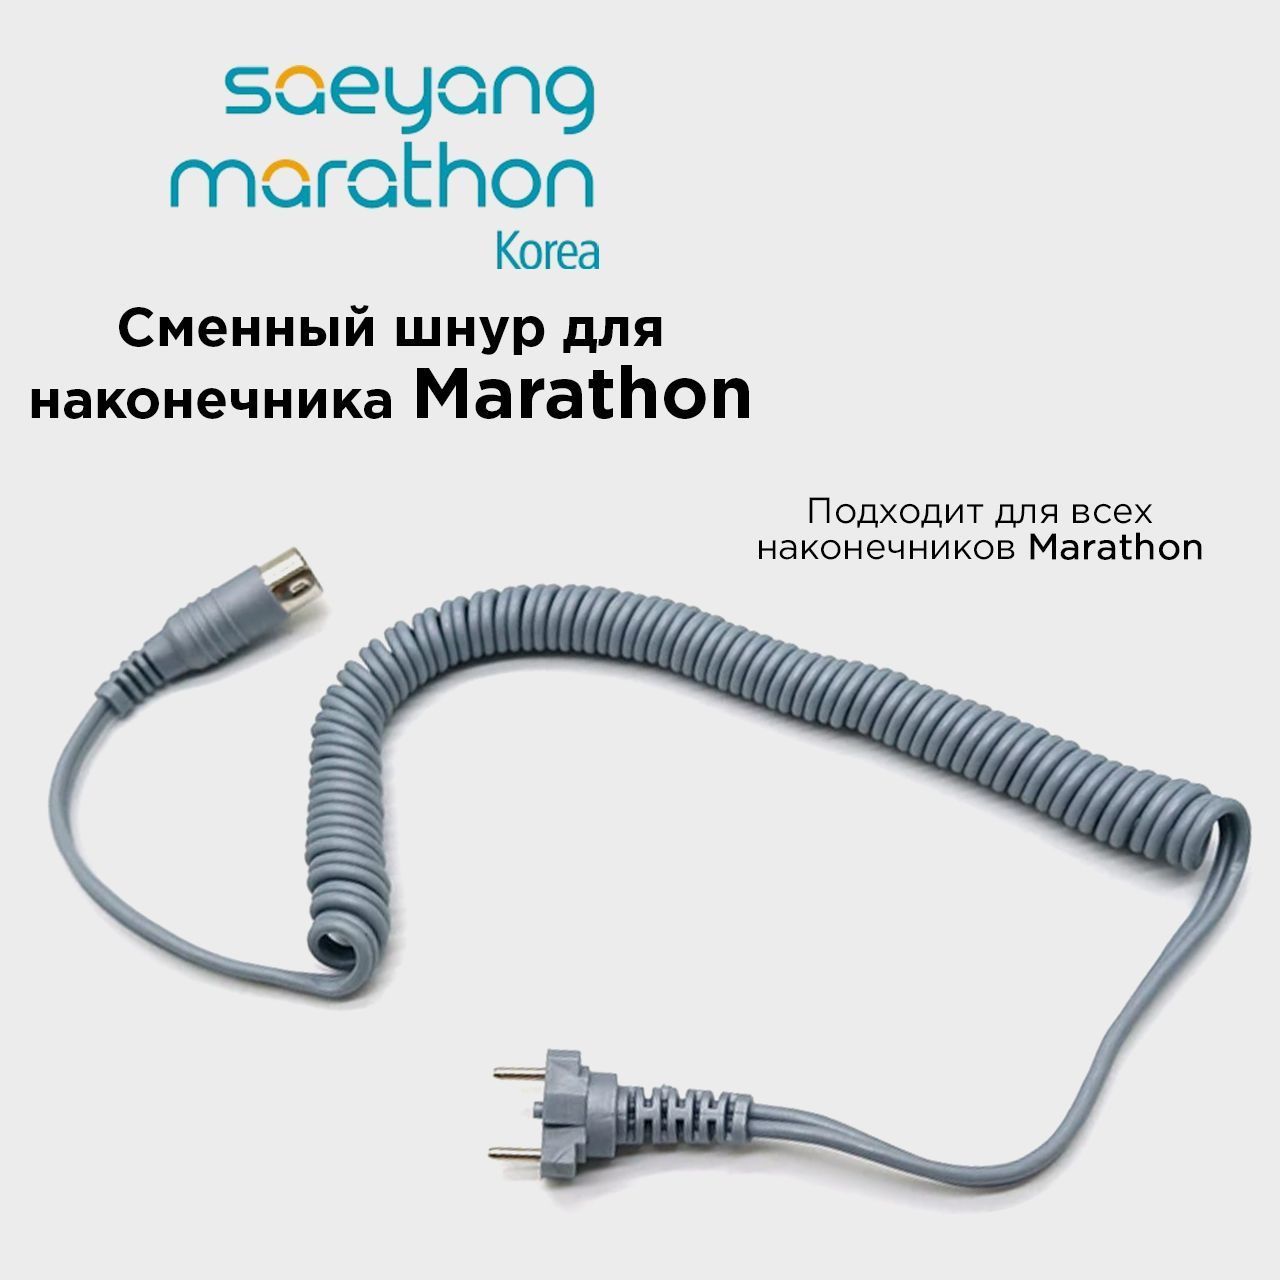 Провод для микромотора Marathon шнур для ручки наконечника Маратон Серый шнур каучуковый на бобине 90 м неполый d 1 5 мм